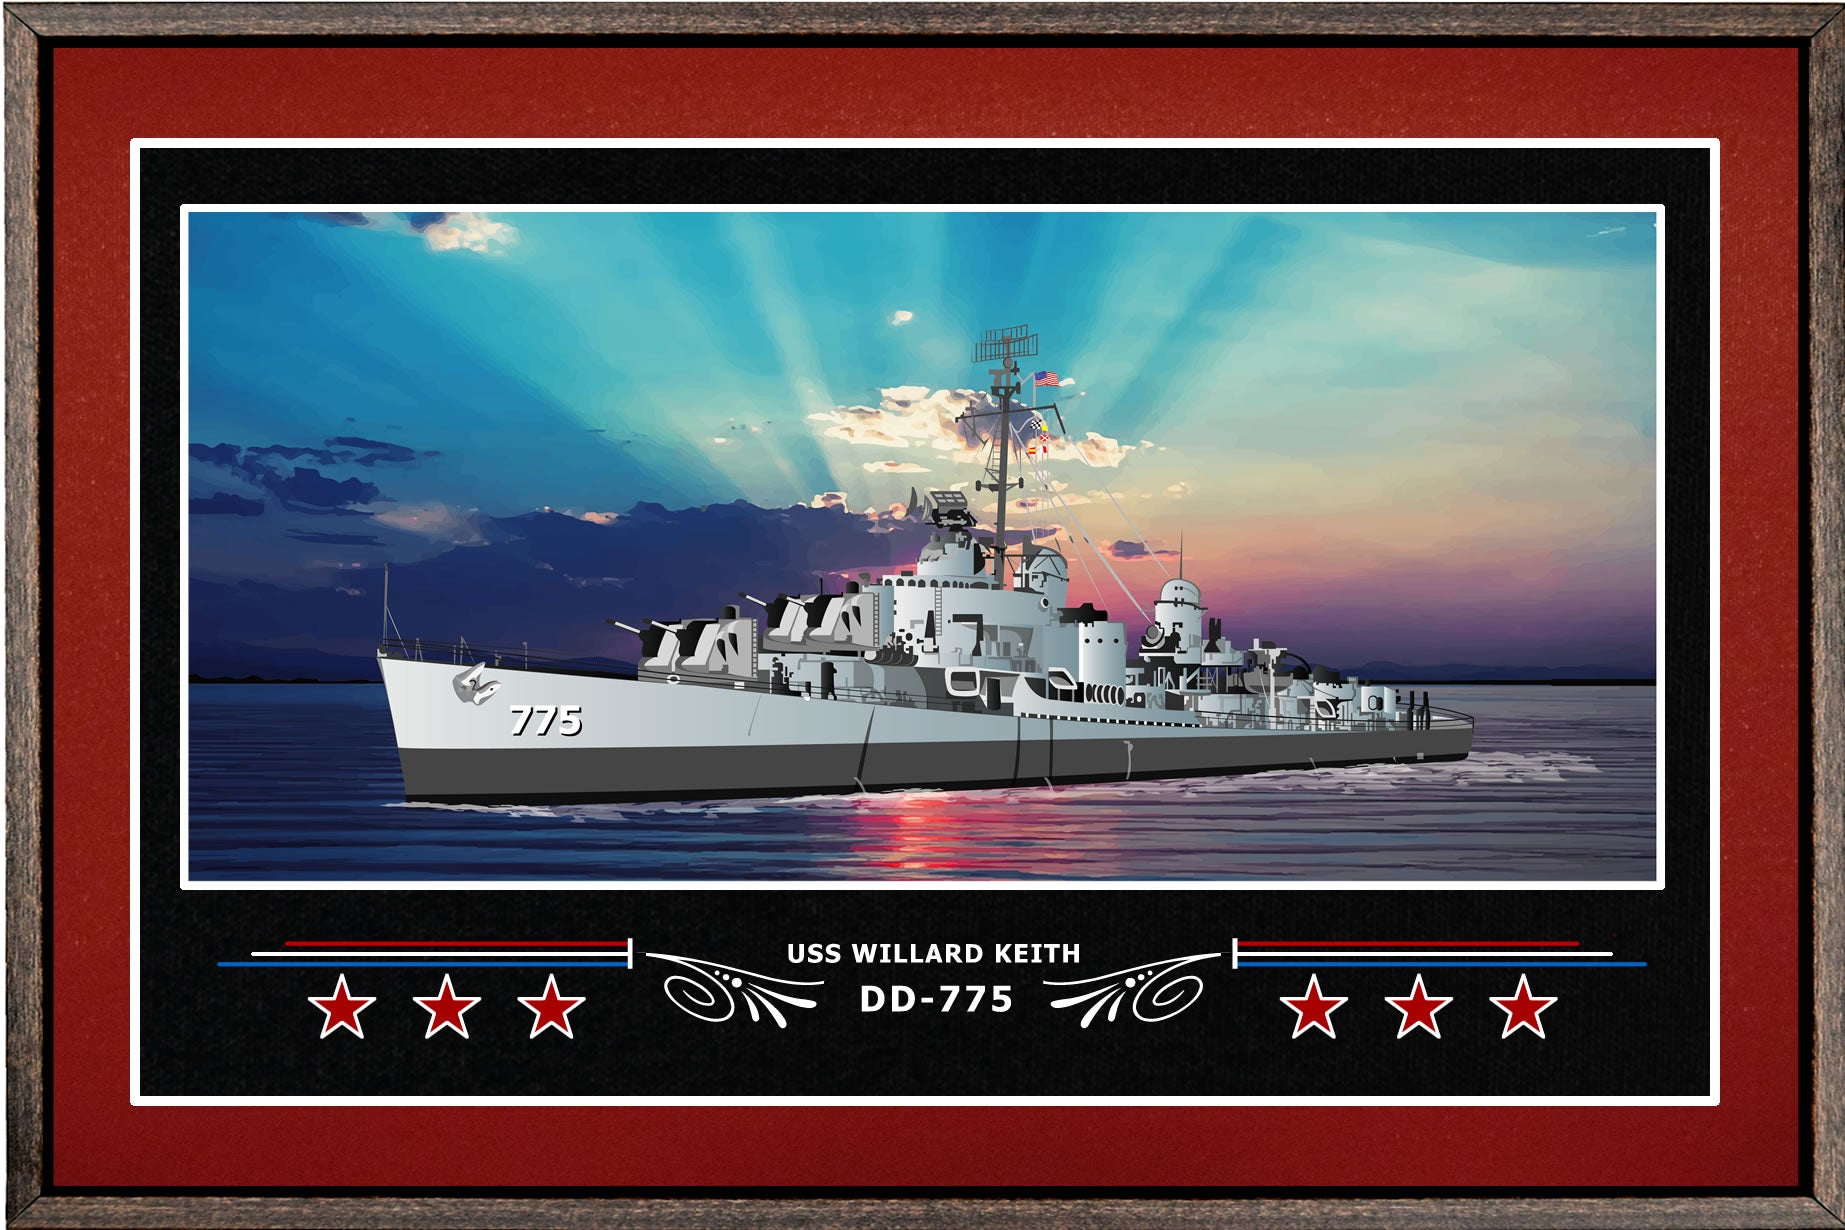 USS WILLARD KEITH DD 775 BOX FRAMED CANVAS ART BURGUNDY